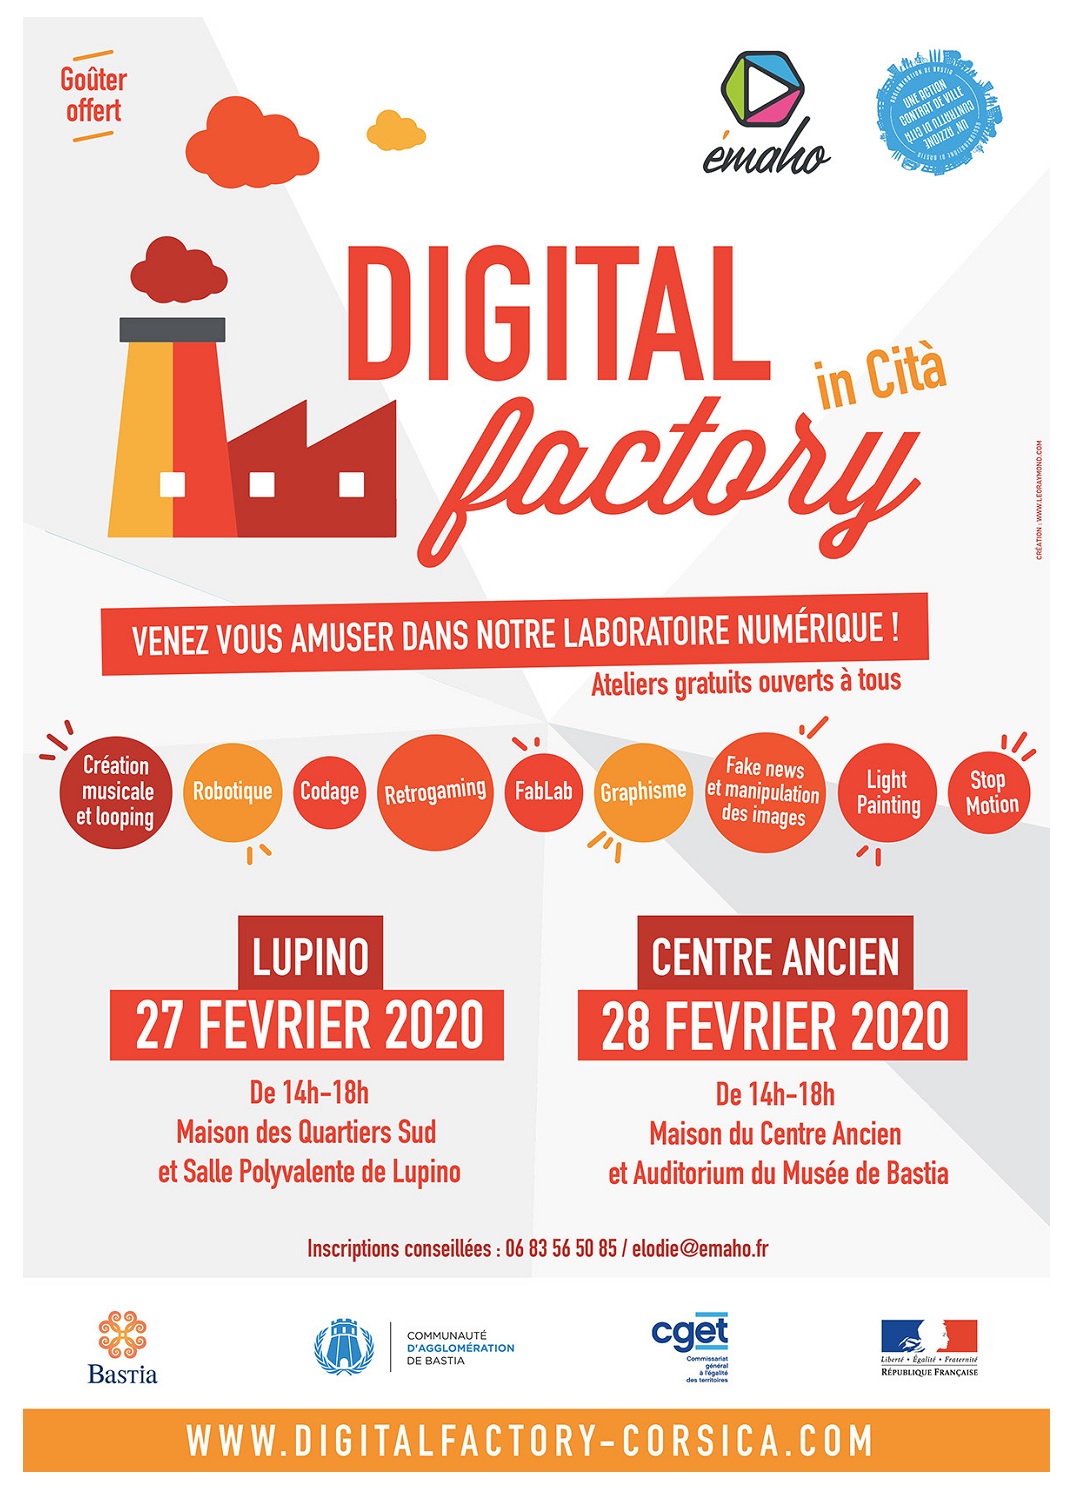 Bastia : Les journées Digital Factory.